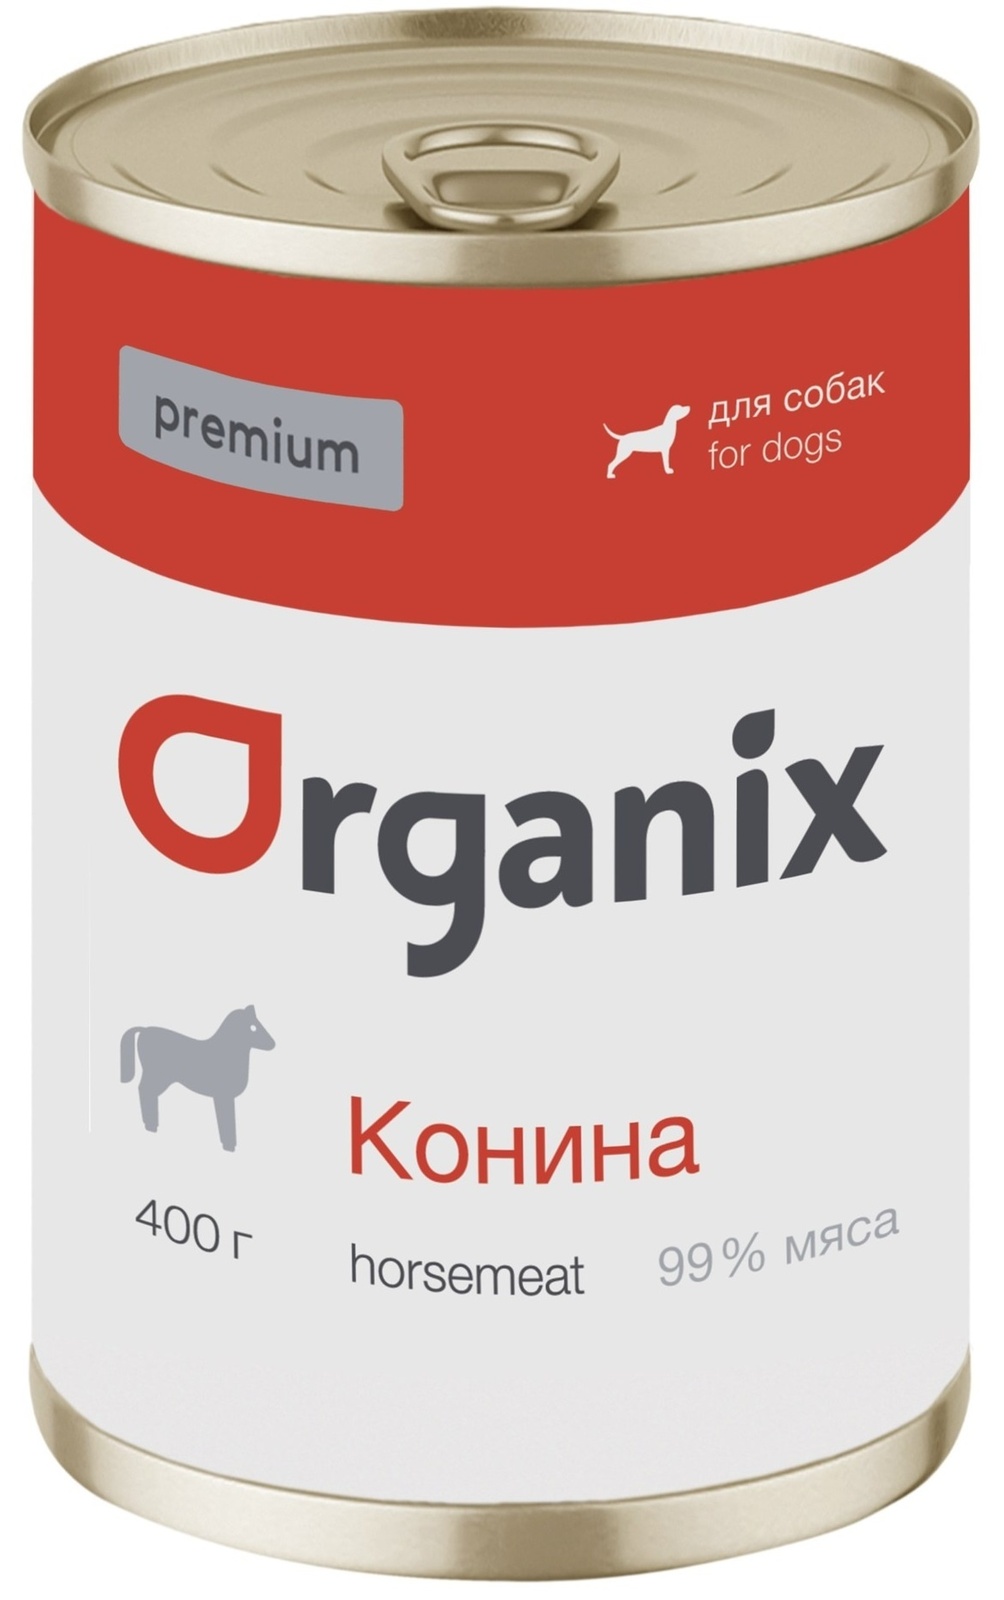 Organix консервы Organix монобелковые премиум консервы для собак, с кониной (100 г) organix консервы organix монобелковые премиум консервы для собак с гусем 400 г